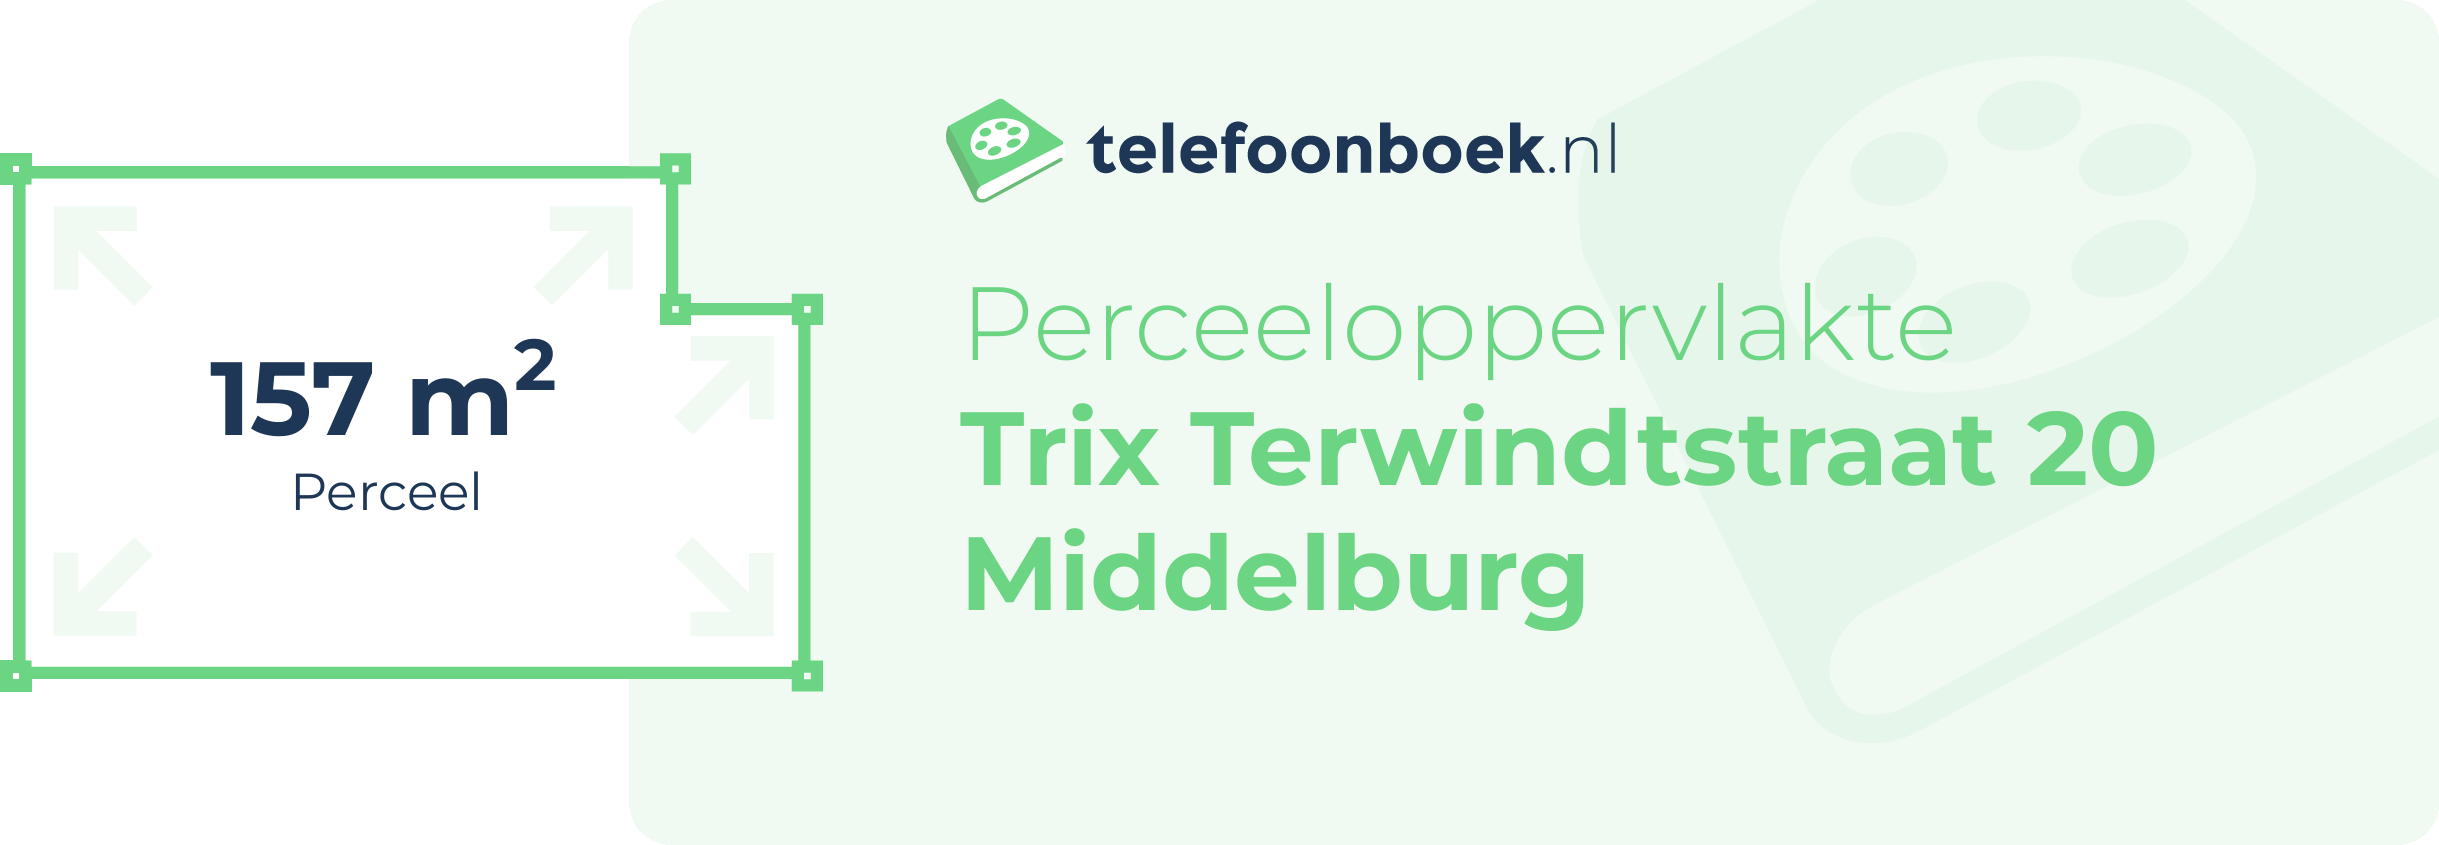 Perceeloppervlakte Trix Terwindtstraat 20 Middelburg